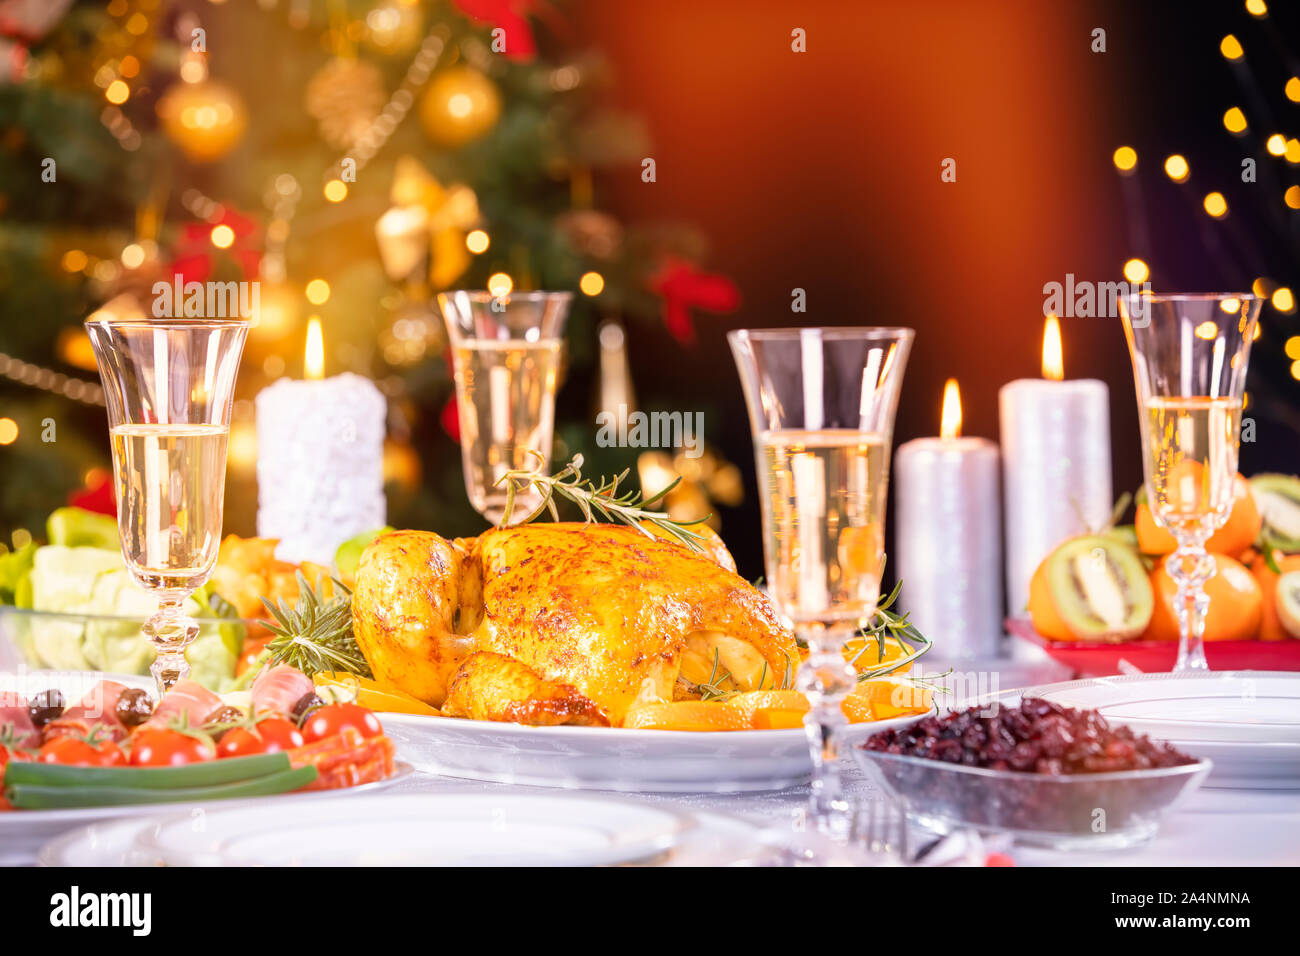 Weihnachtsessen. Huhn gegen glühende Weihnachtsbeleuchtung und brennenden Kerzen. Ferienwohnung gedeckter Tisch, Weihnachtsbaum, Champagner und gebratener Truthahn, Stockfoto